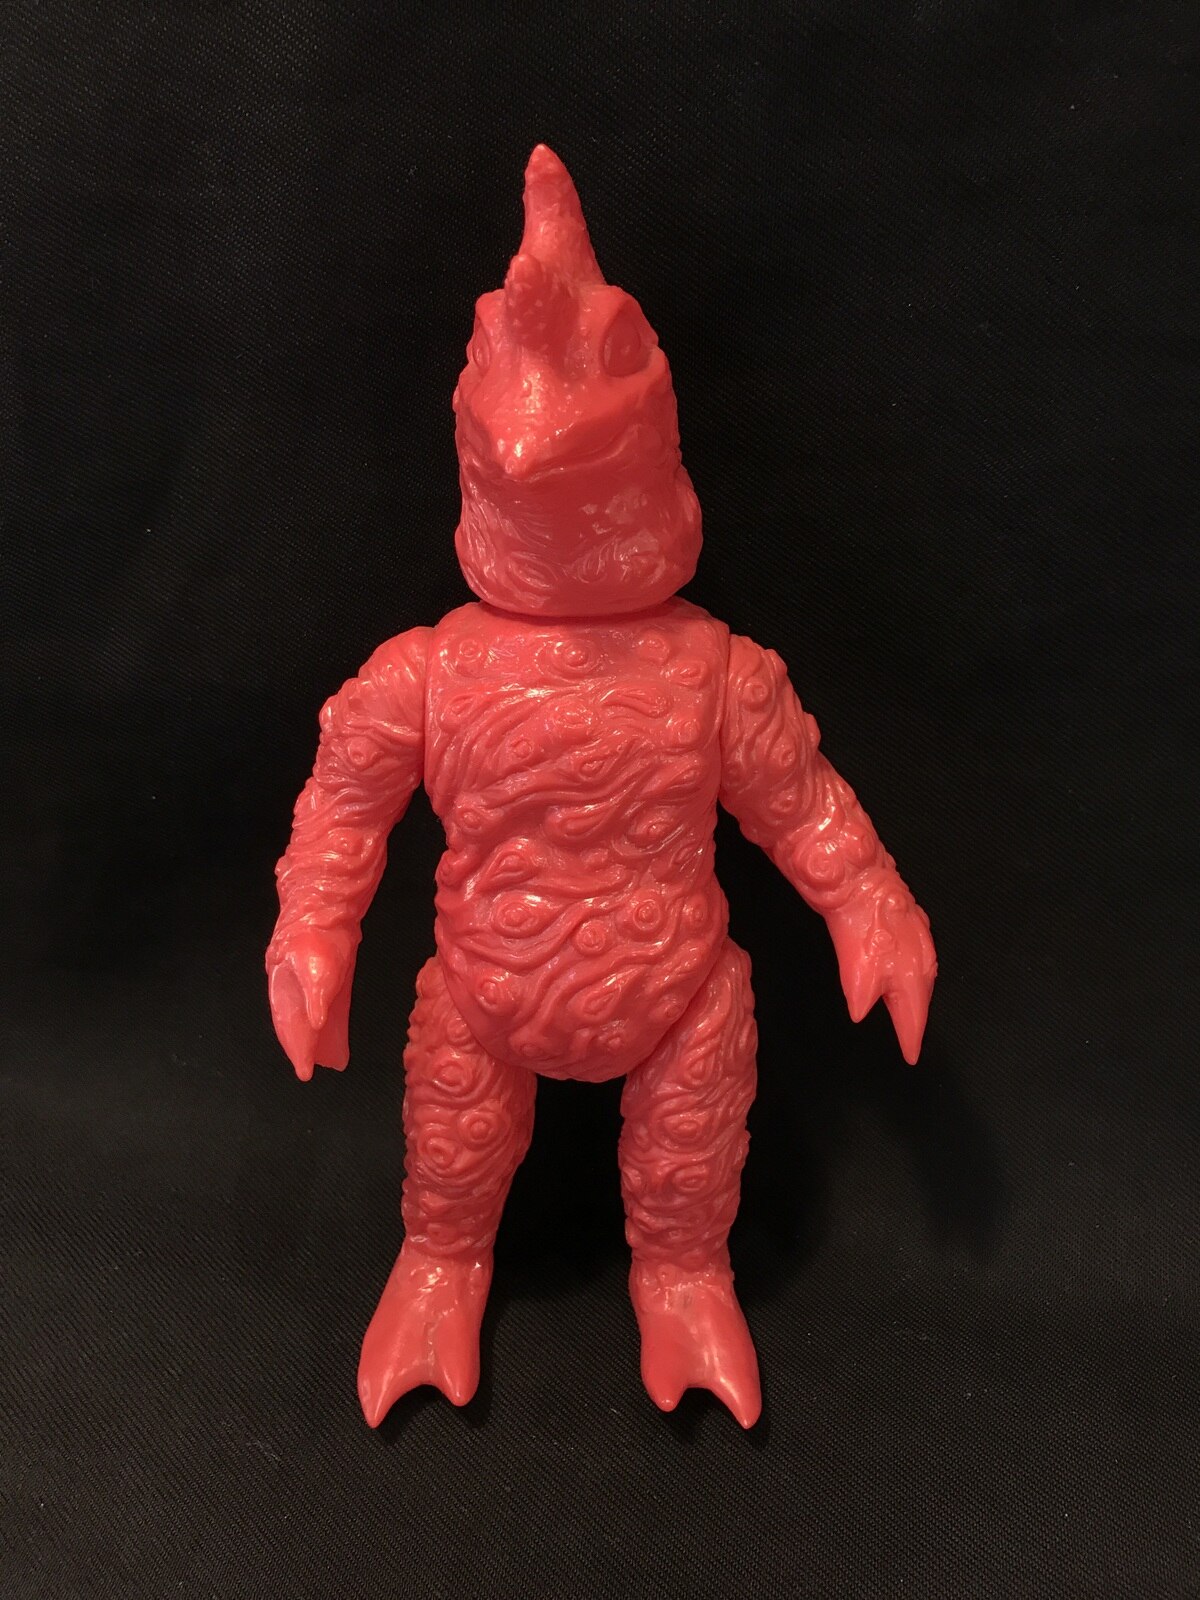 ベアモデル オール怪獣コレクション ペロリンガ星人 赤成型 未塗装